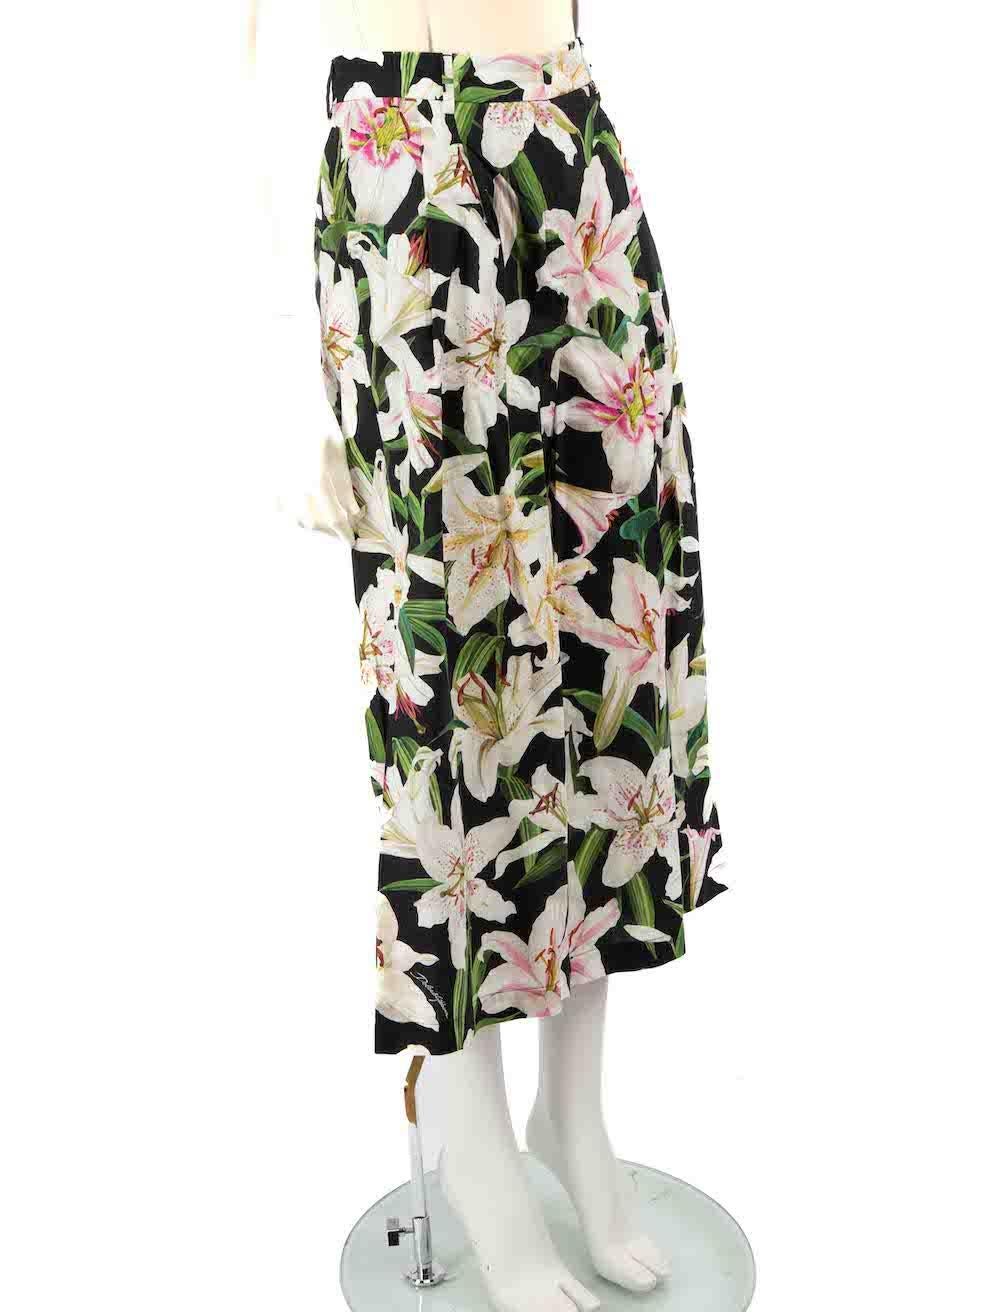 CONDIT ist sehr gut. Kaum sichtbare Abnutzungserscheinungen an der Hose sind an diesem gebrauchten Dolce & Gabbana Designer-Wiederverkaufsartikel zu erkennen.
 
 
 
 Einzelheiten
 
 
 Multicolour-Schwarz mit Blumenmuster
 
 Baumwolle
 
 Hosen
 
